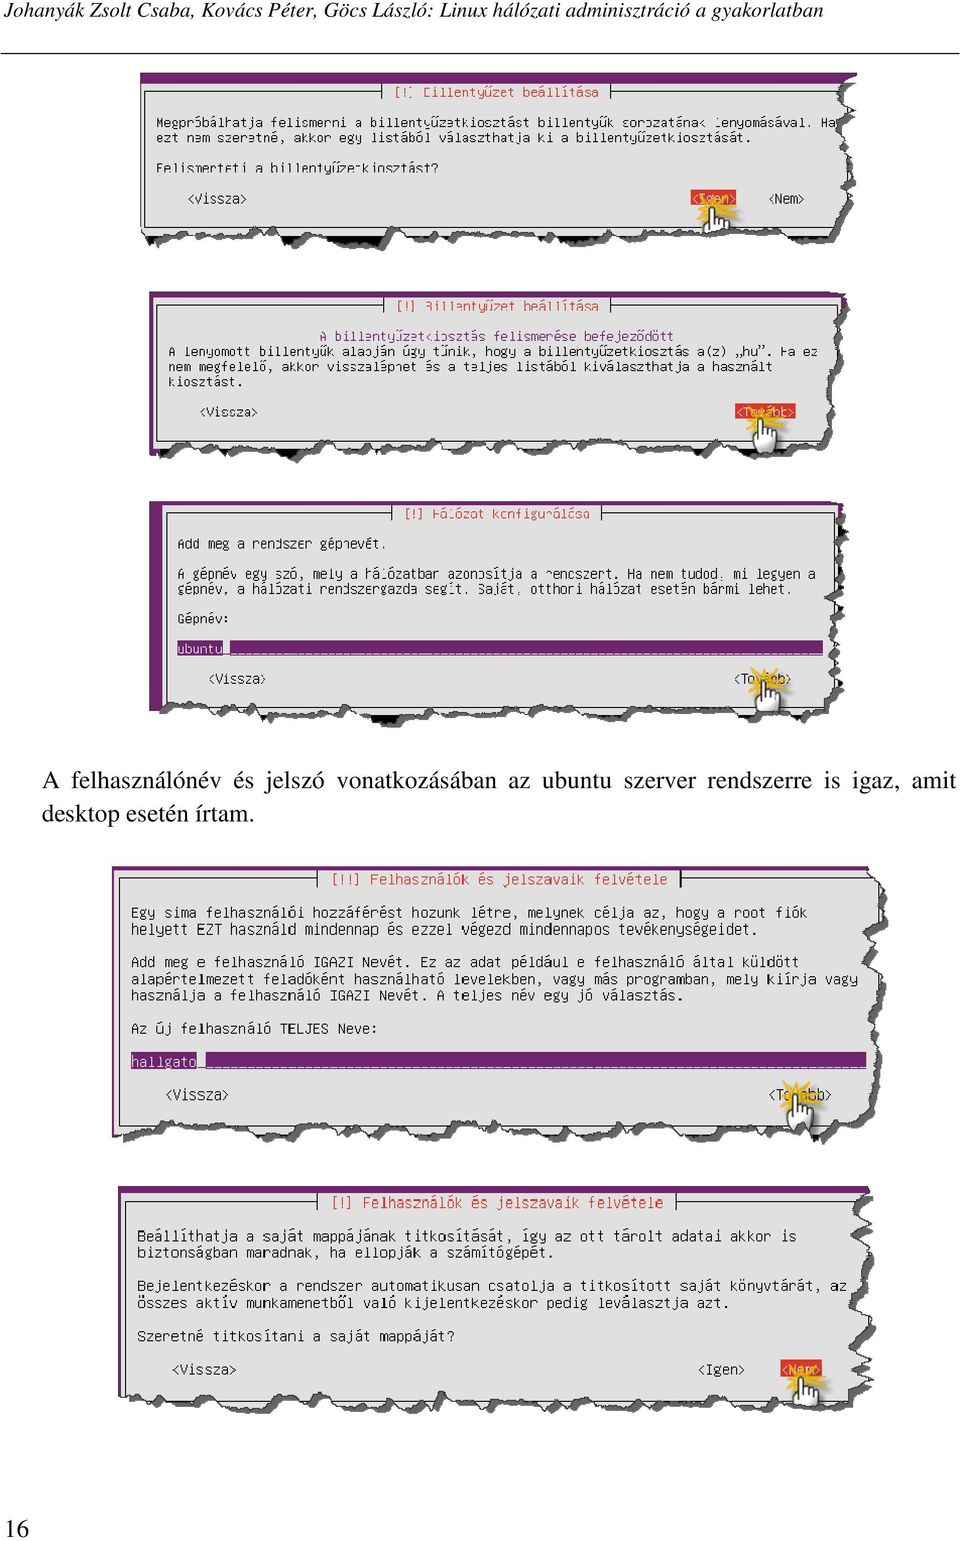 felhasználónév és jelszó vonatkozásában az ubuntu